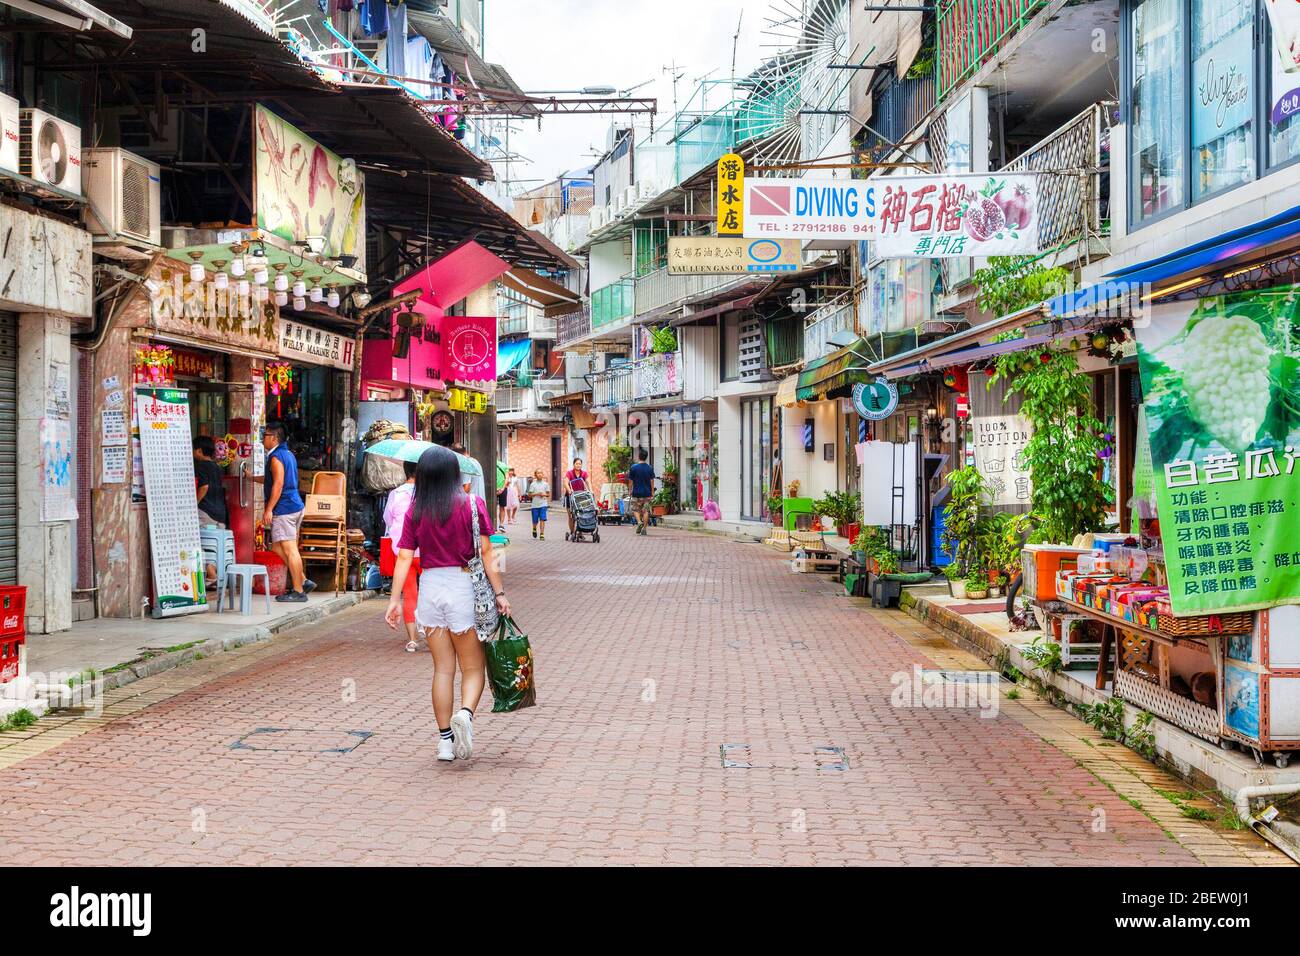 Hong Kong, Hong Kong SAR - July 14, 2017: Residents and visitors stroll along the main street in old town Sai Kung village. The laidback seaside town Stock Photo